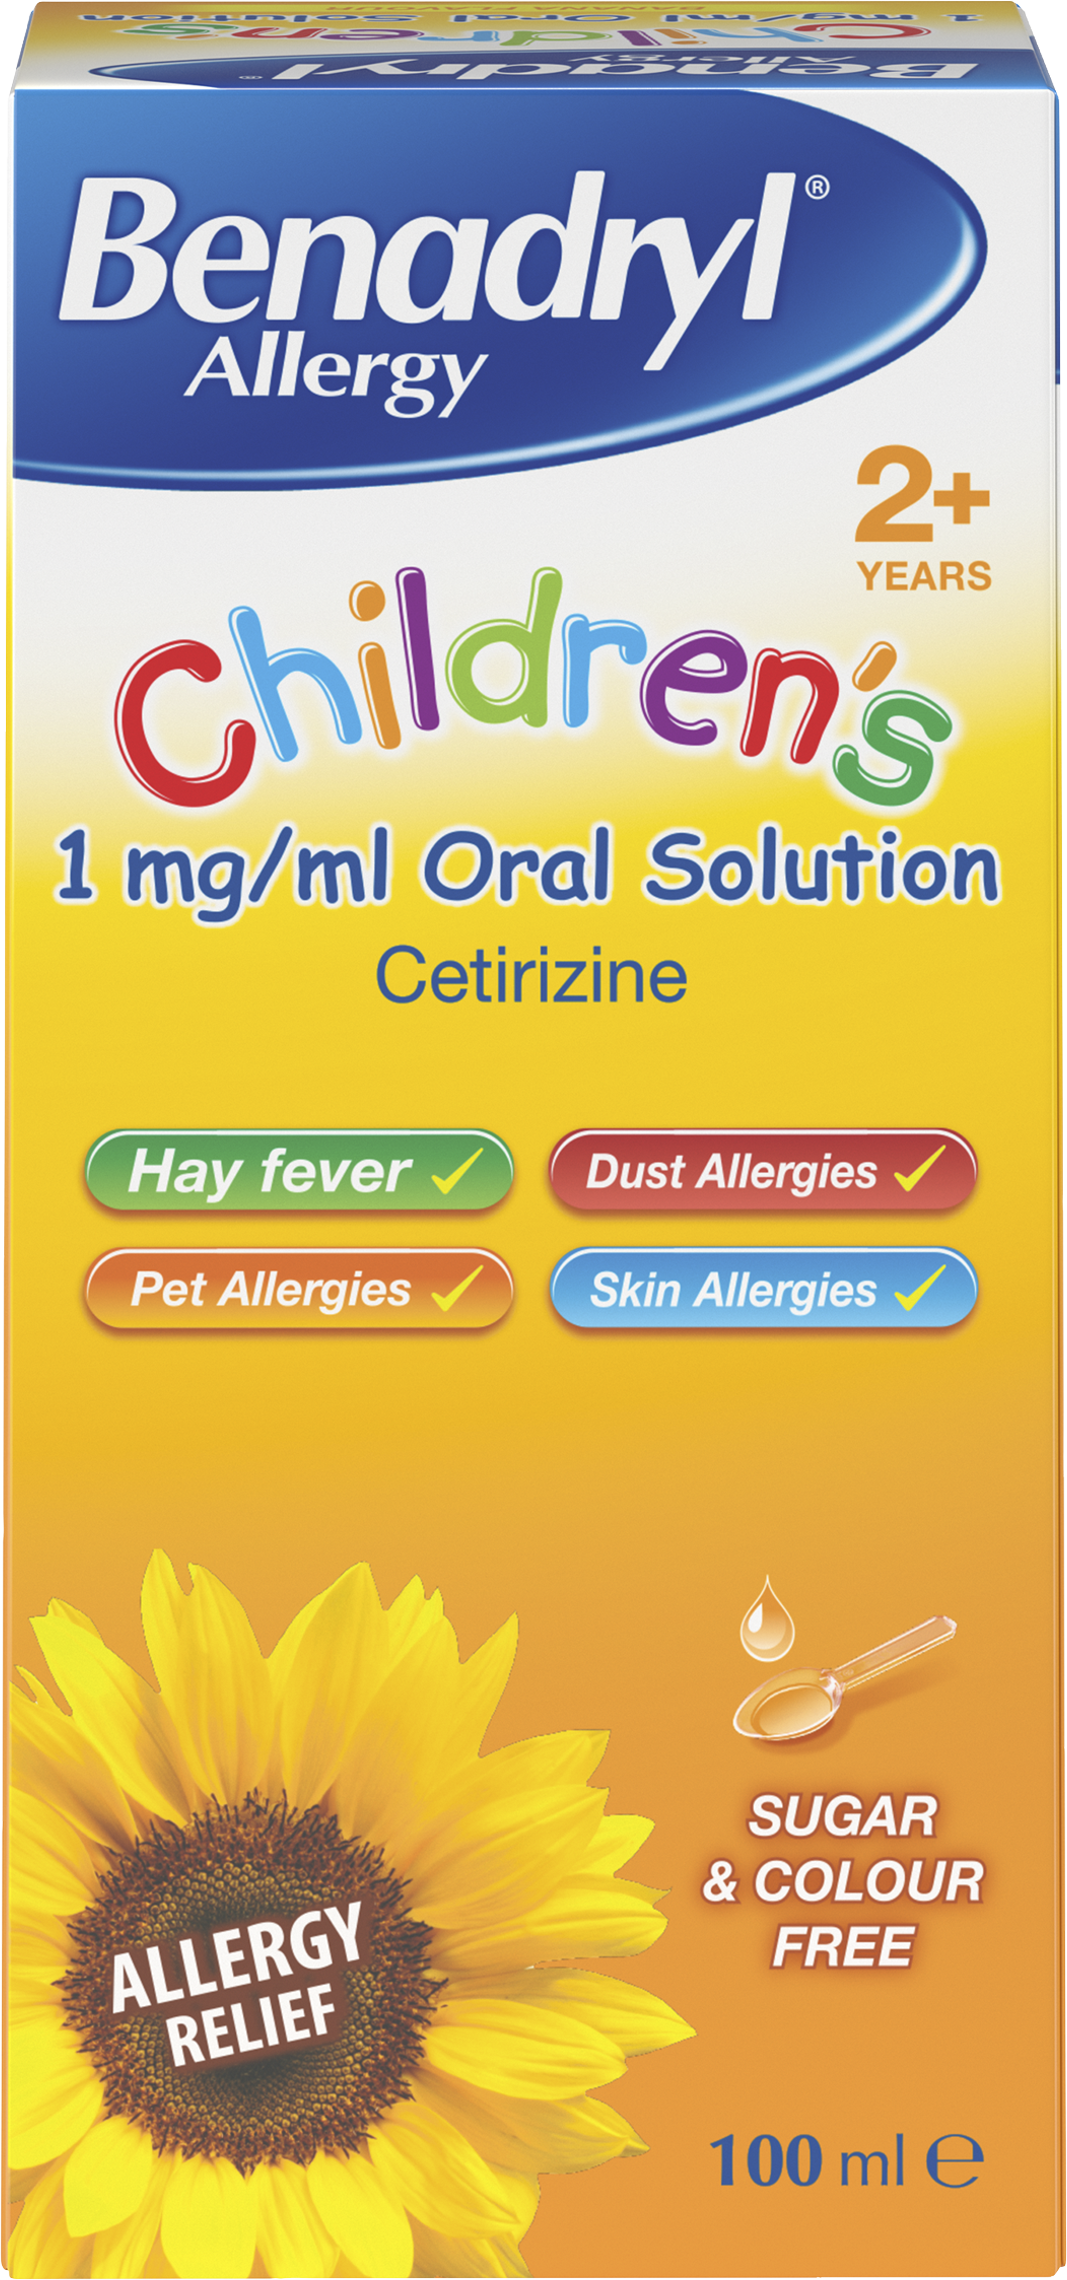 Hay Fever In Children